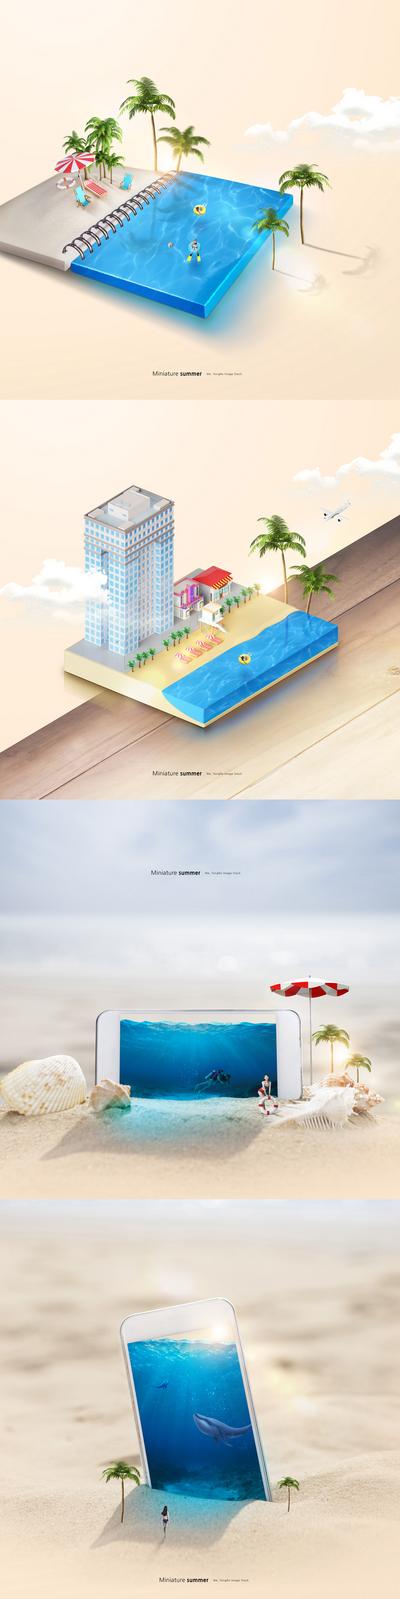 南门网 海报 夏季 夏日 夏天 旅游 度假 创意 简约 书本 游泳池 沙滩 手机